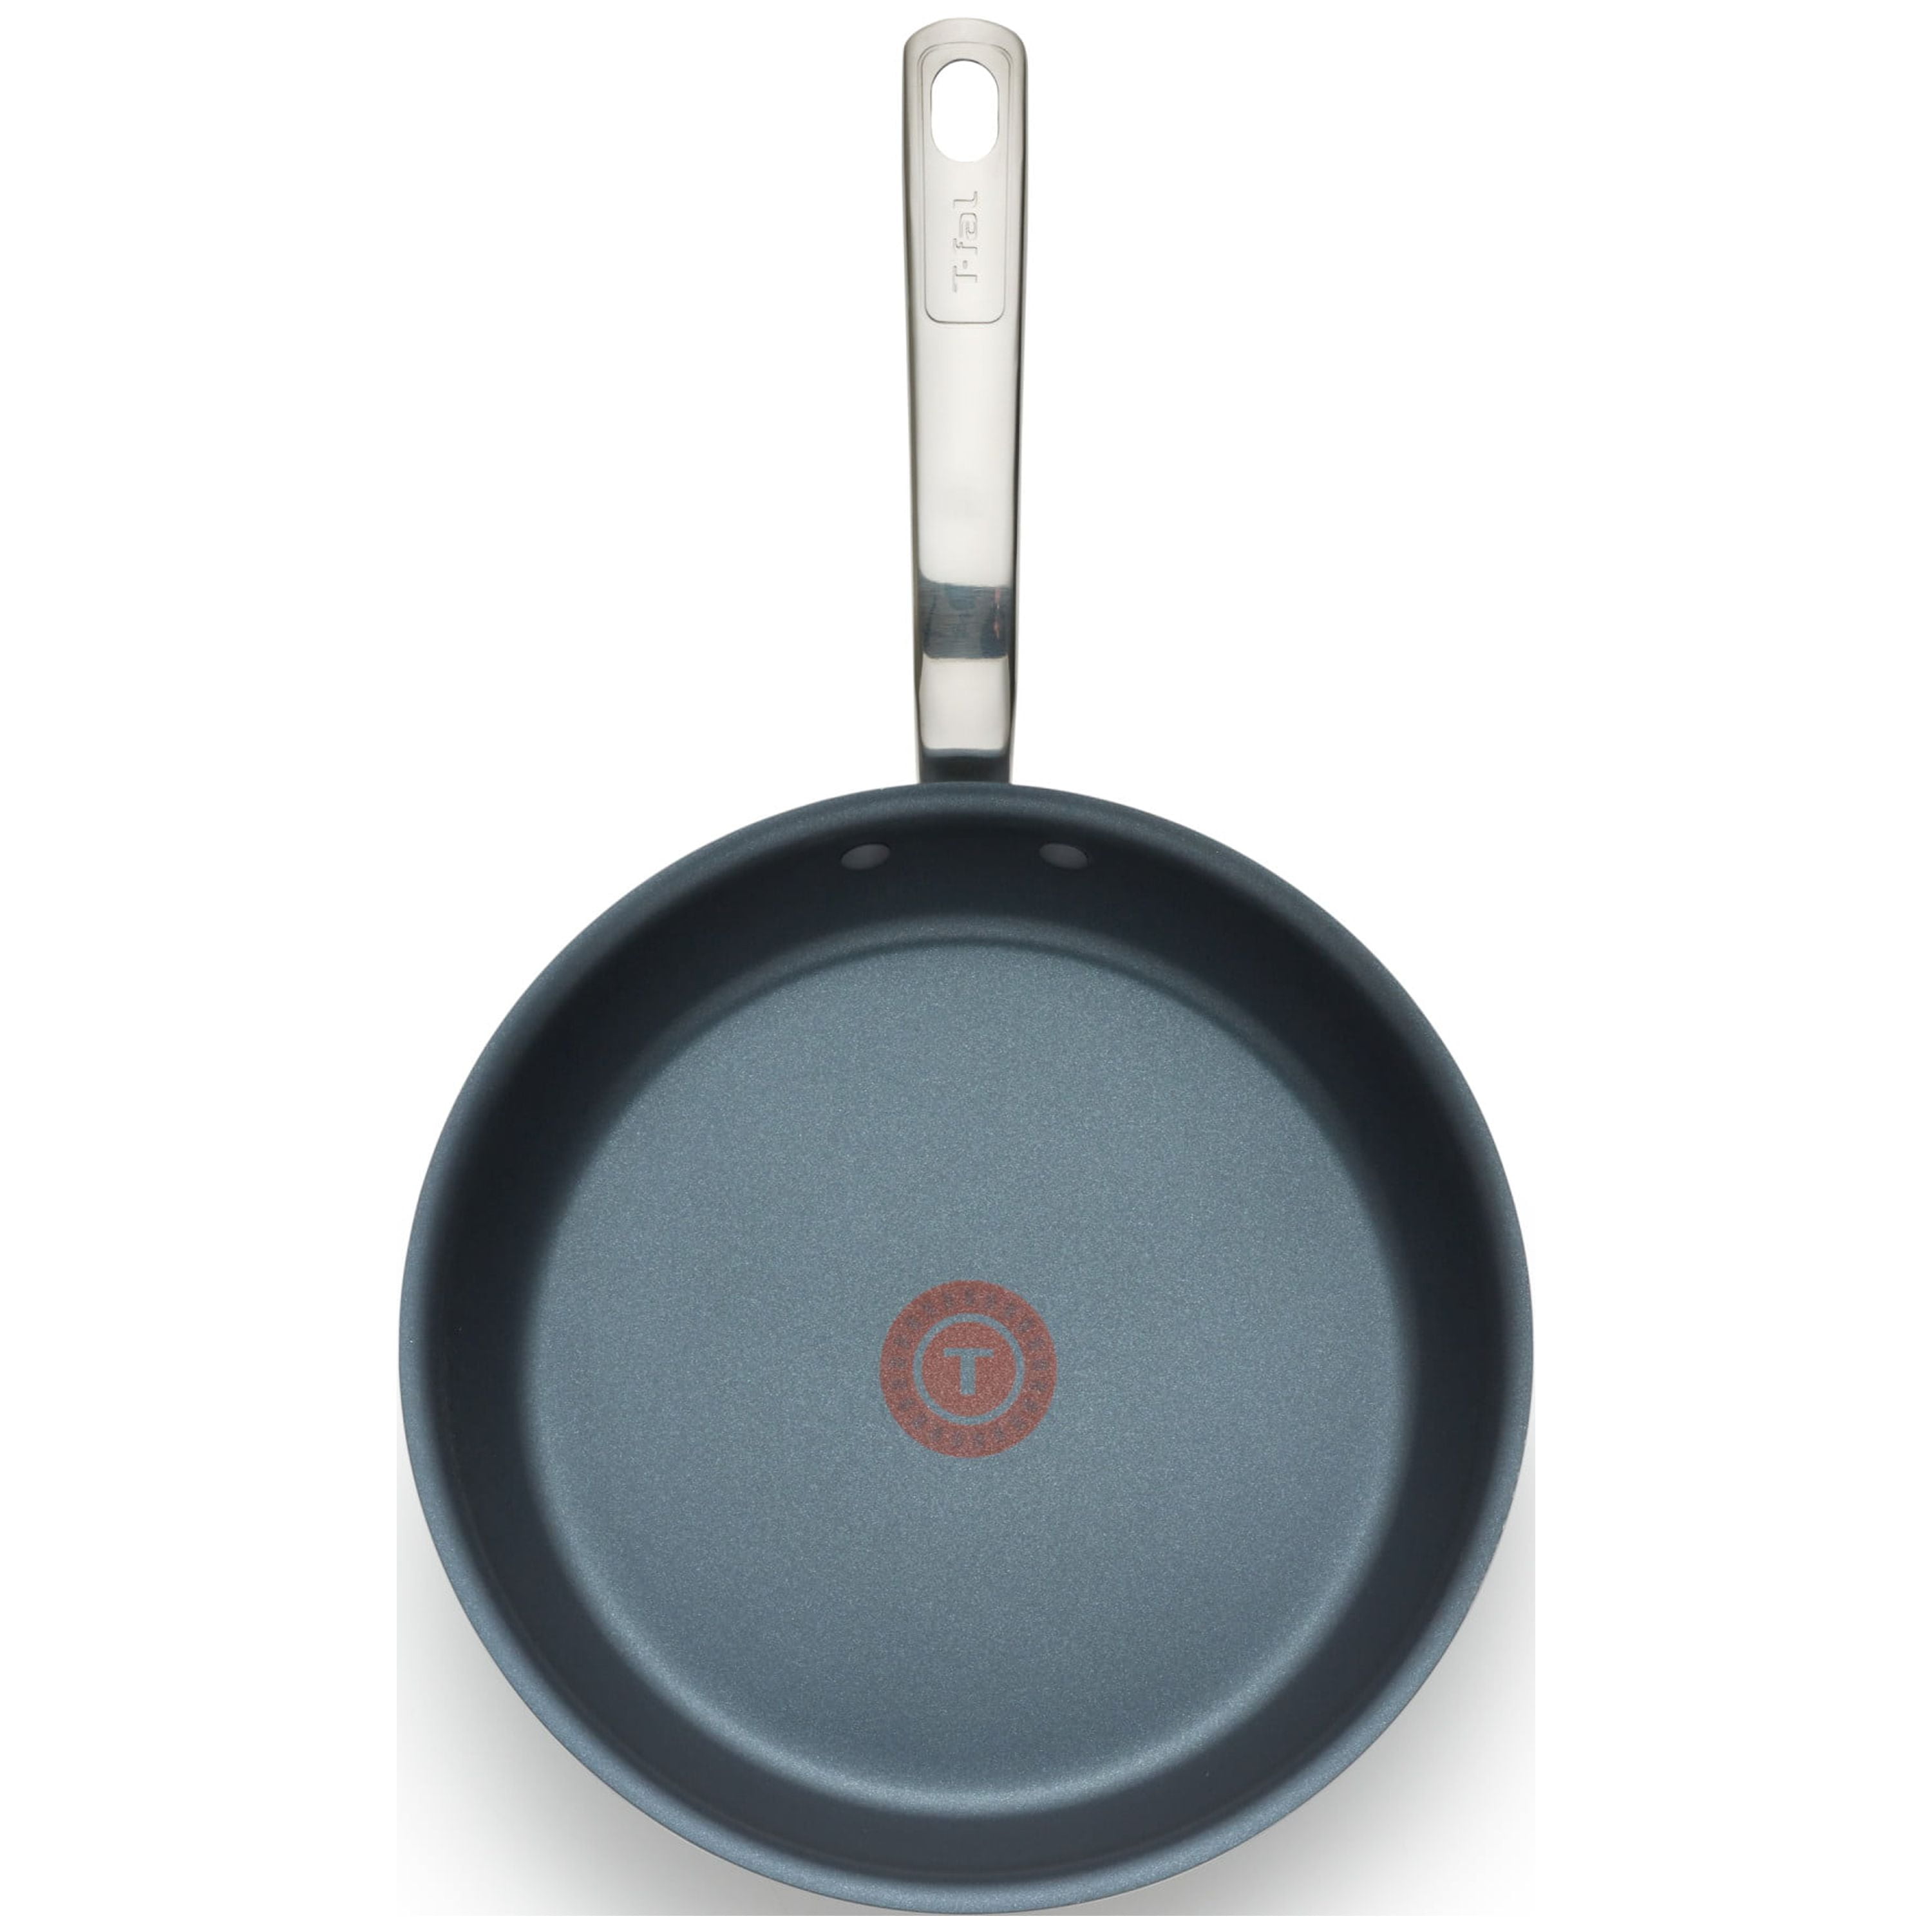 TeChef - Blue Color Pan 12 Fry Pan, Coated with Teflon® Select (PFOA Free)